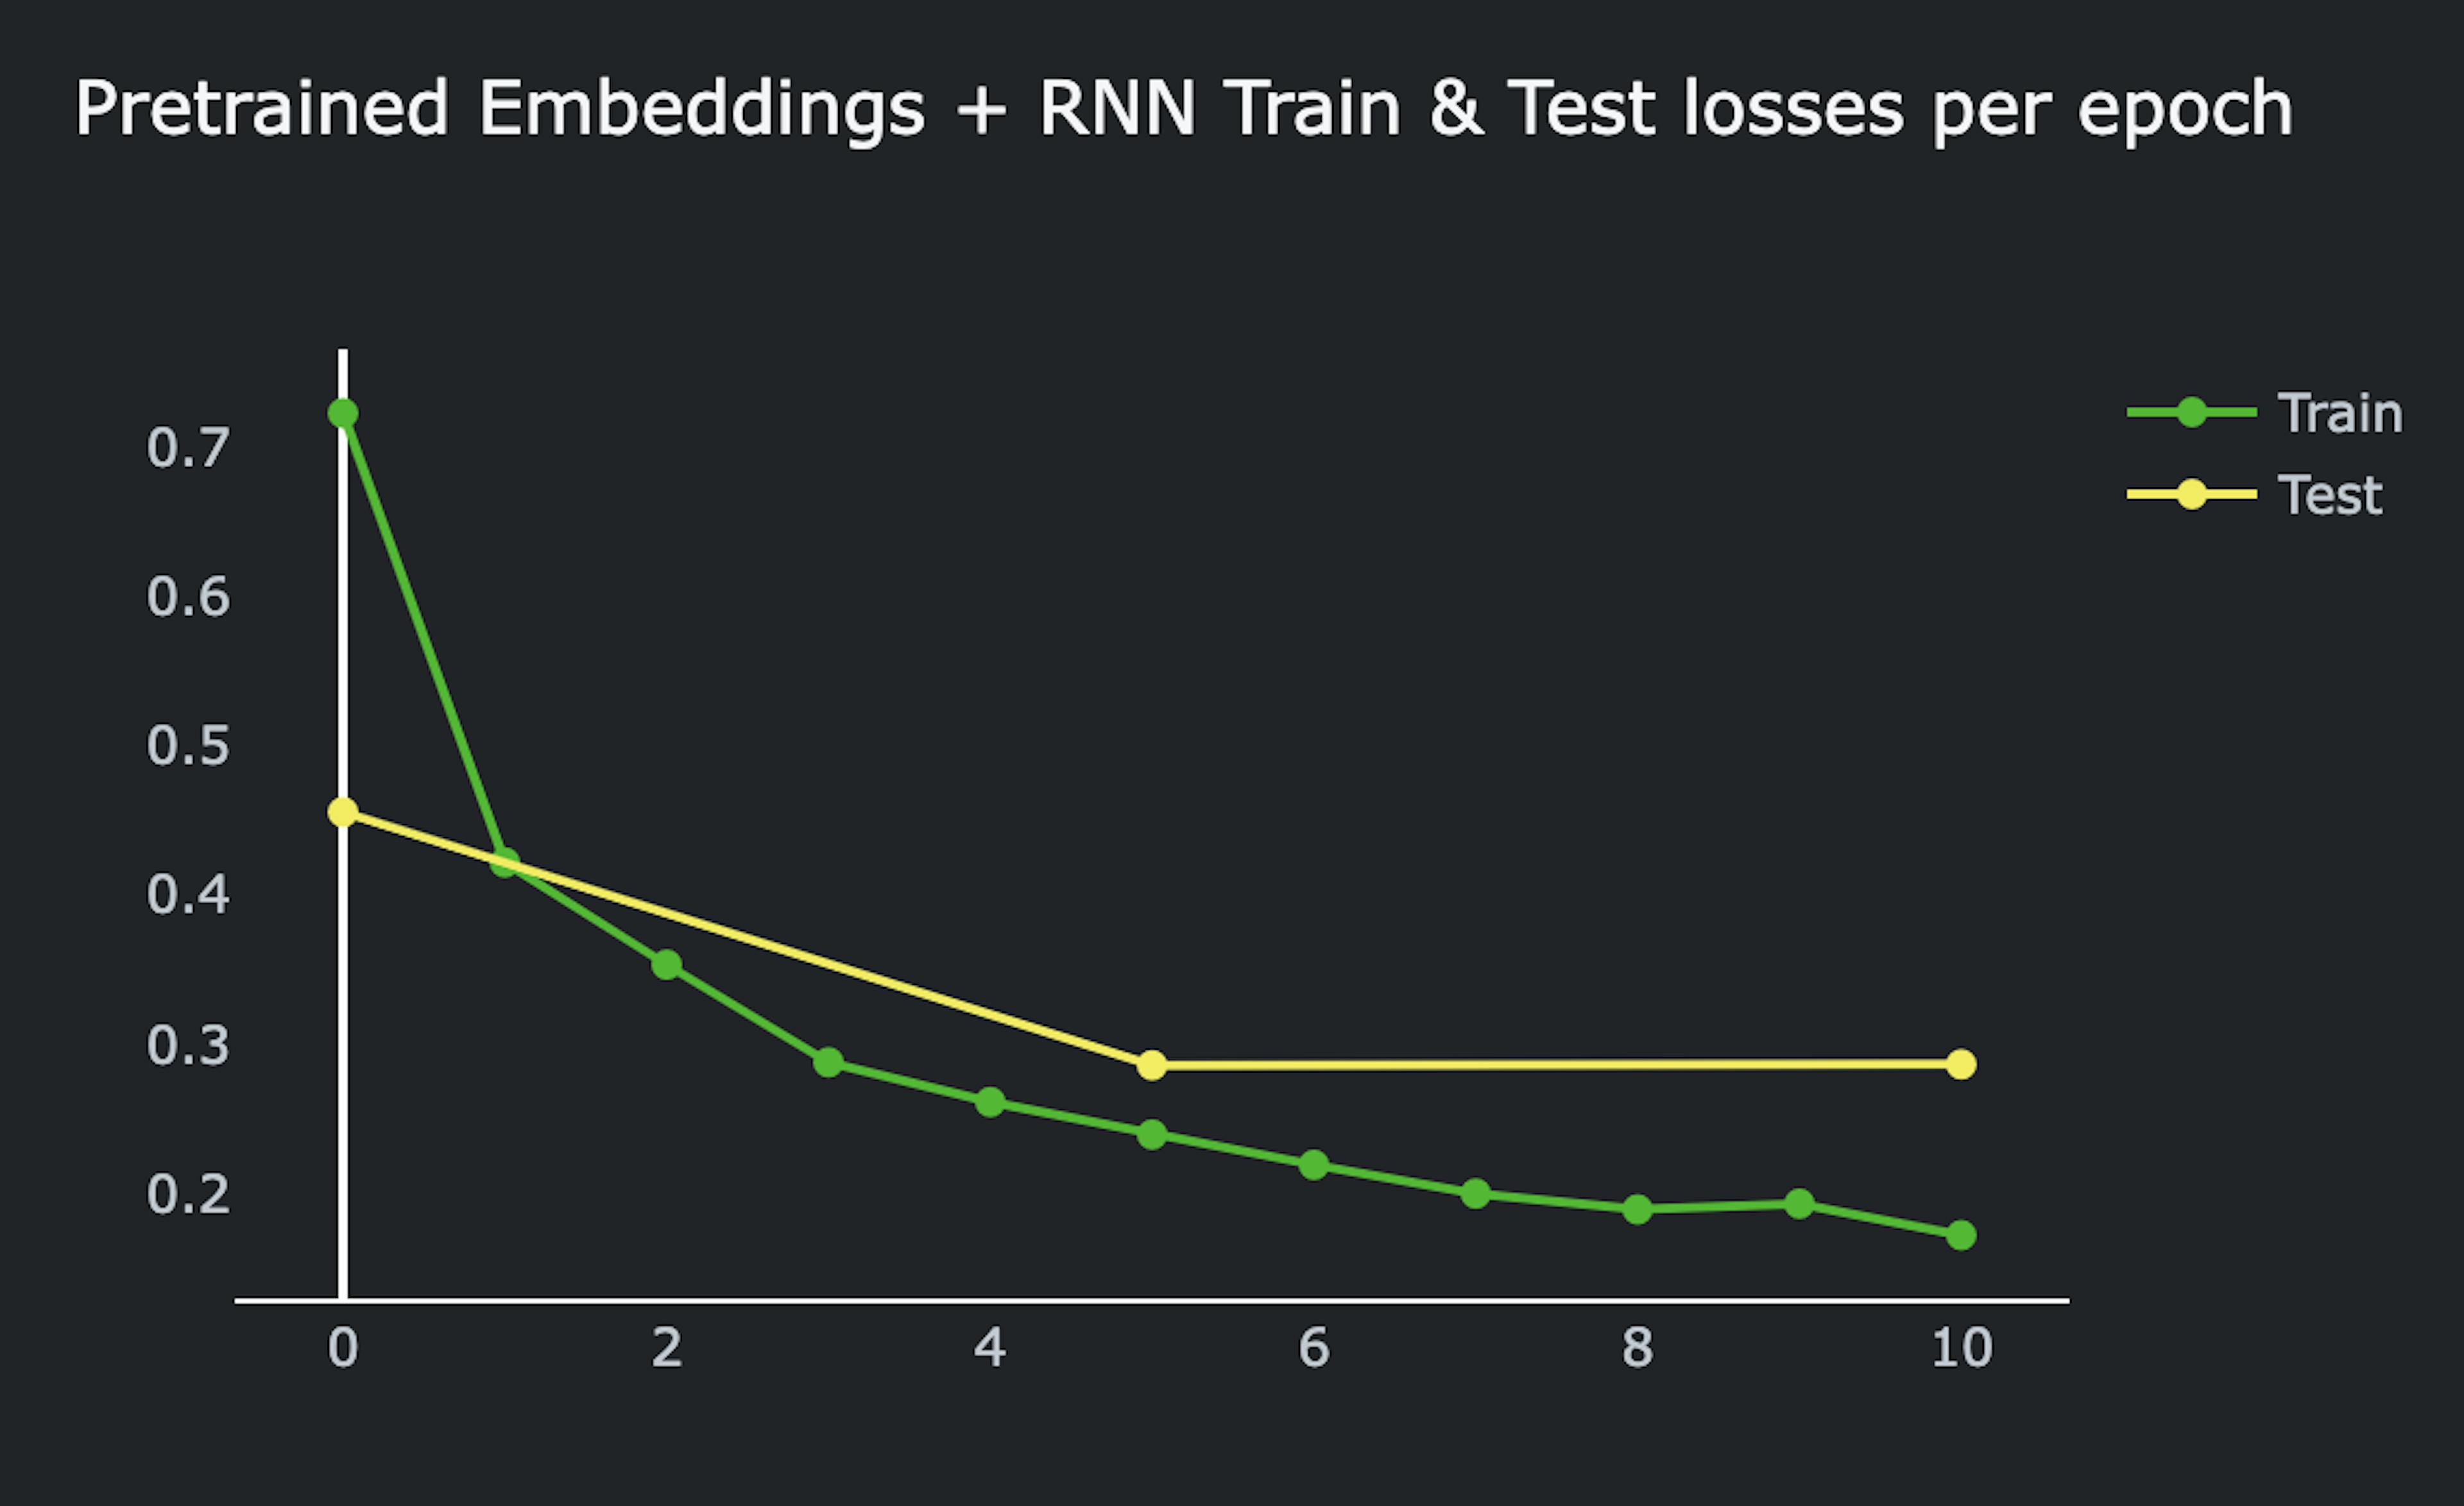 Perdas de treinamento e teste por época, modelo RNN + embeddings pré-treinados